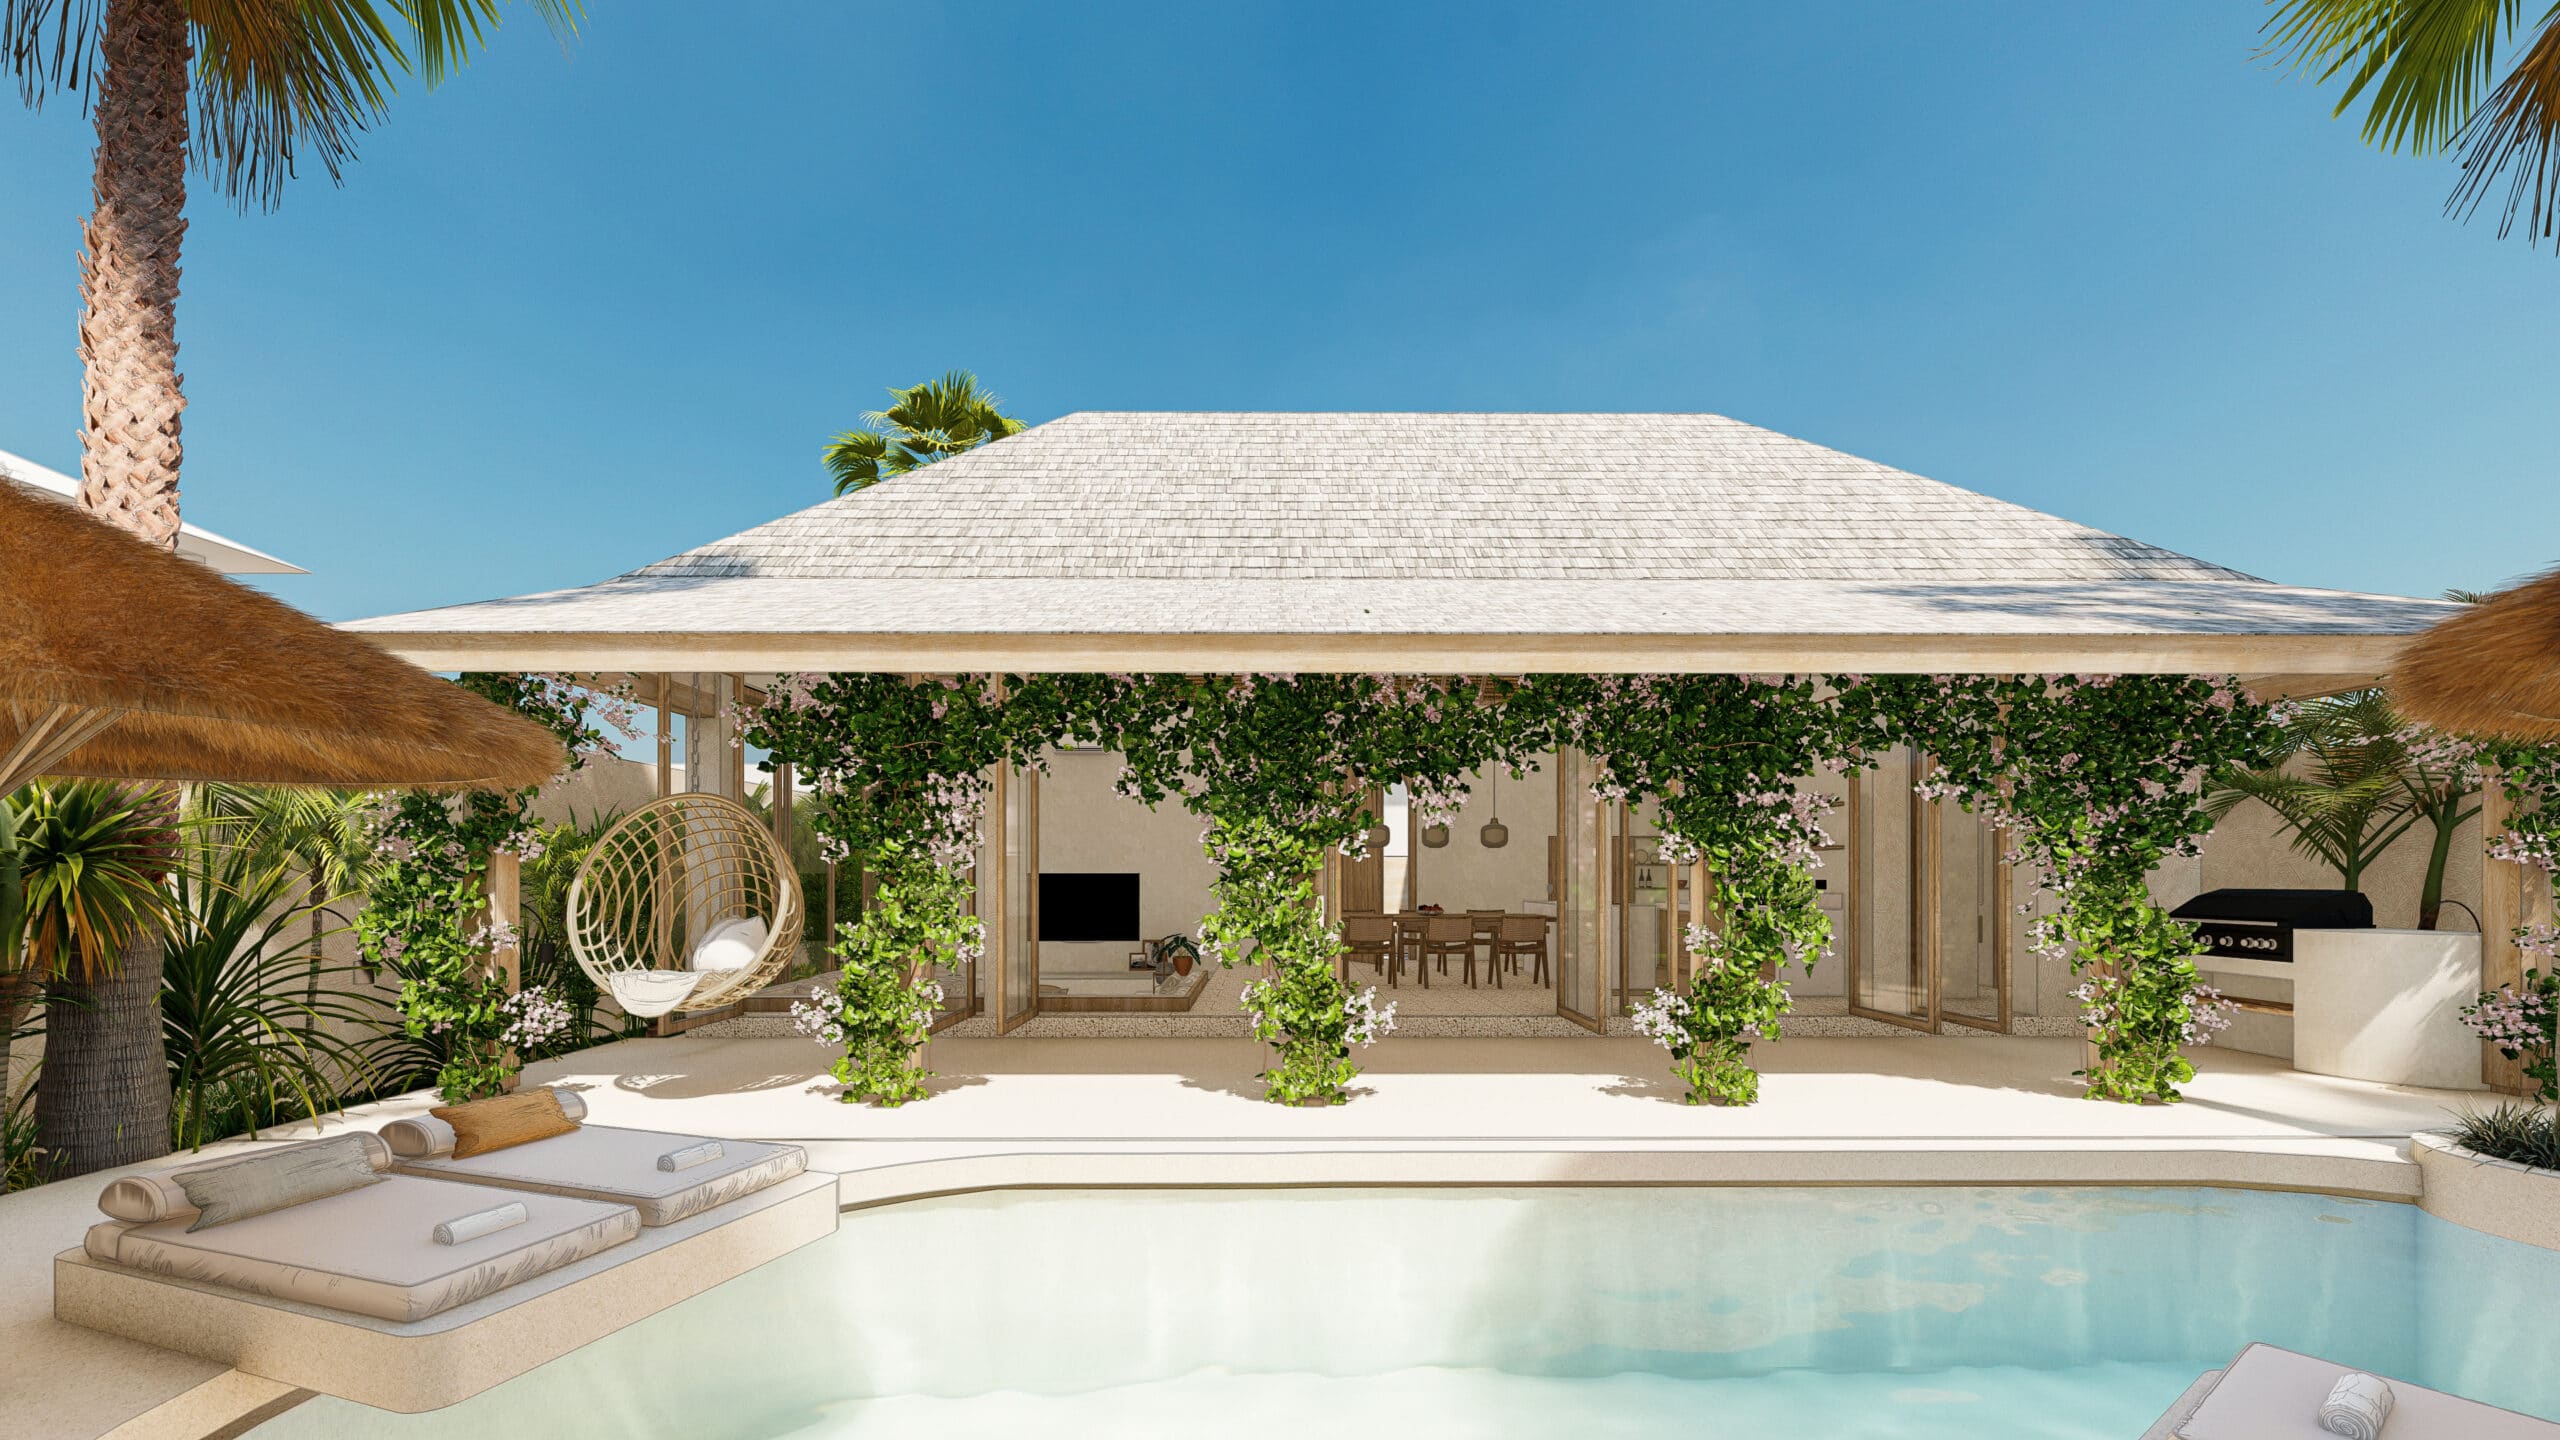 Design Assembly - Michael Utomo Villa - Bali Architect - Interior Design - Bali Villa - Swimming Pool Area